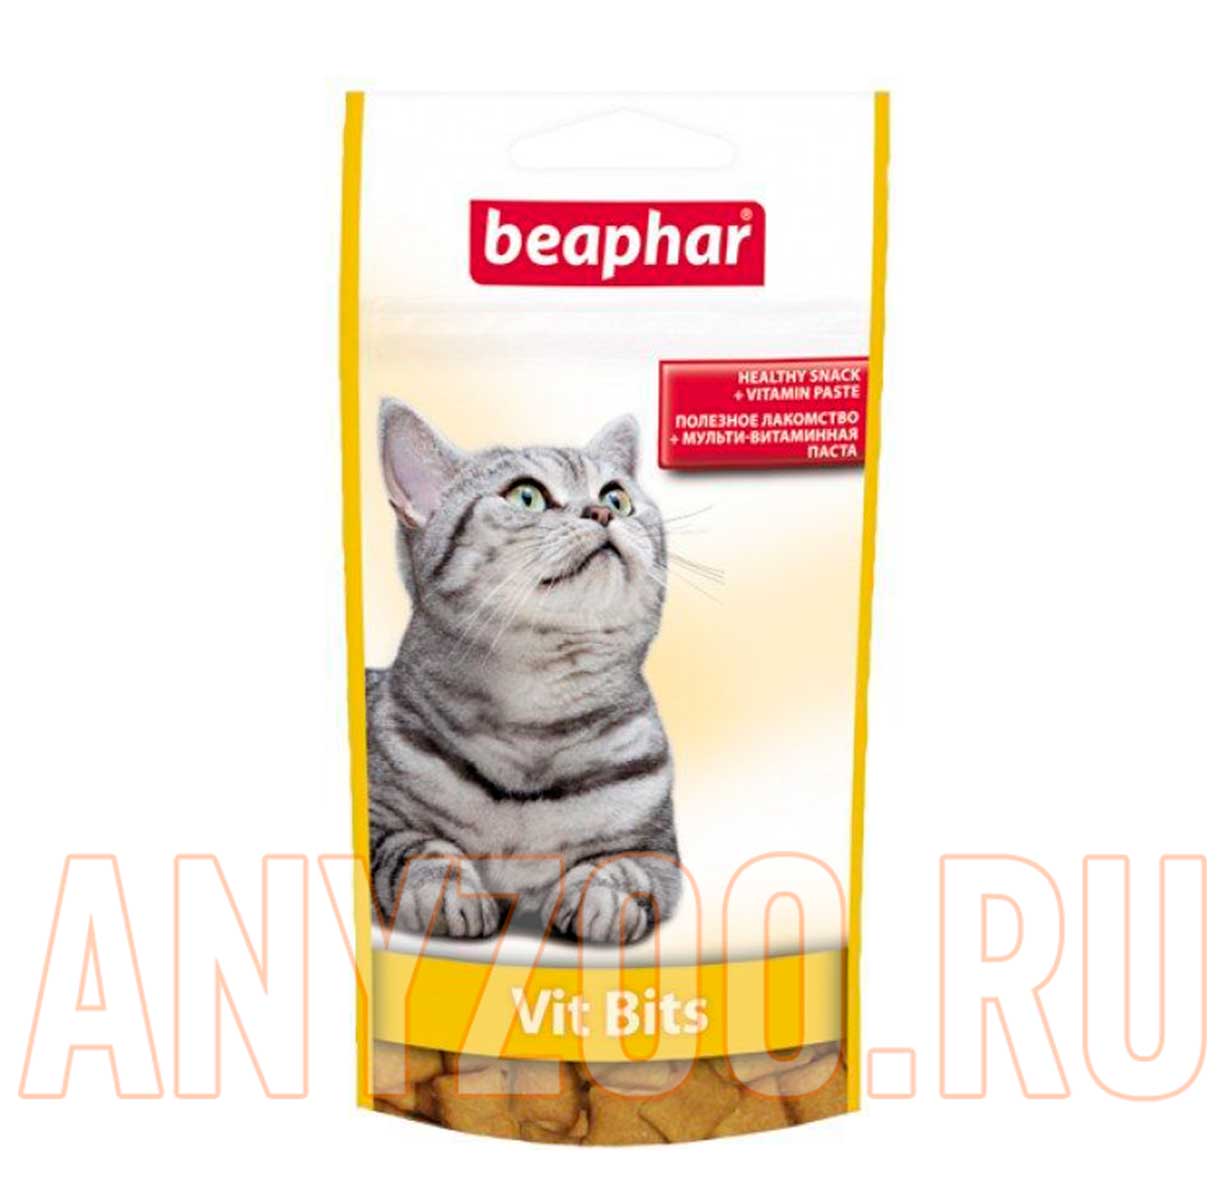 Beaphar Беафар Vit-Bits подушеки с мультивитаминной пастой для кошек Фото